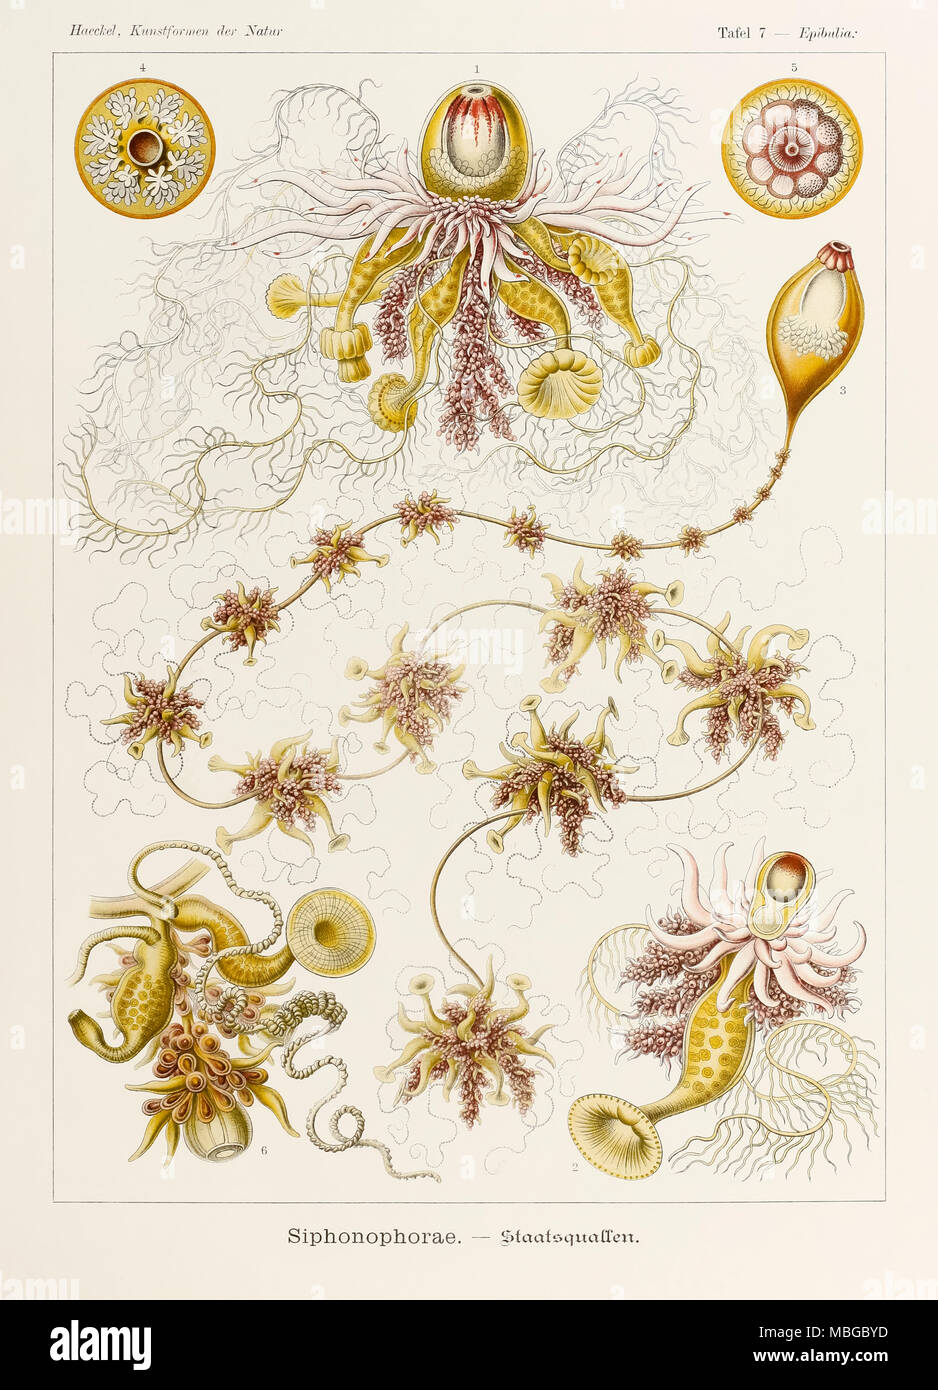 7 Placa Epibulia Siphonophorae desde "Kunstformen der Natur" (formas artísticas en la naturaleza), ilustrado por Ernst Haeckel (1834-1919). Ver más información a continuación. Foto de stock